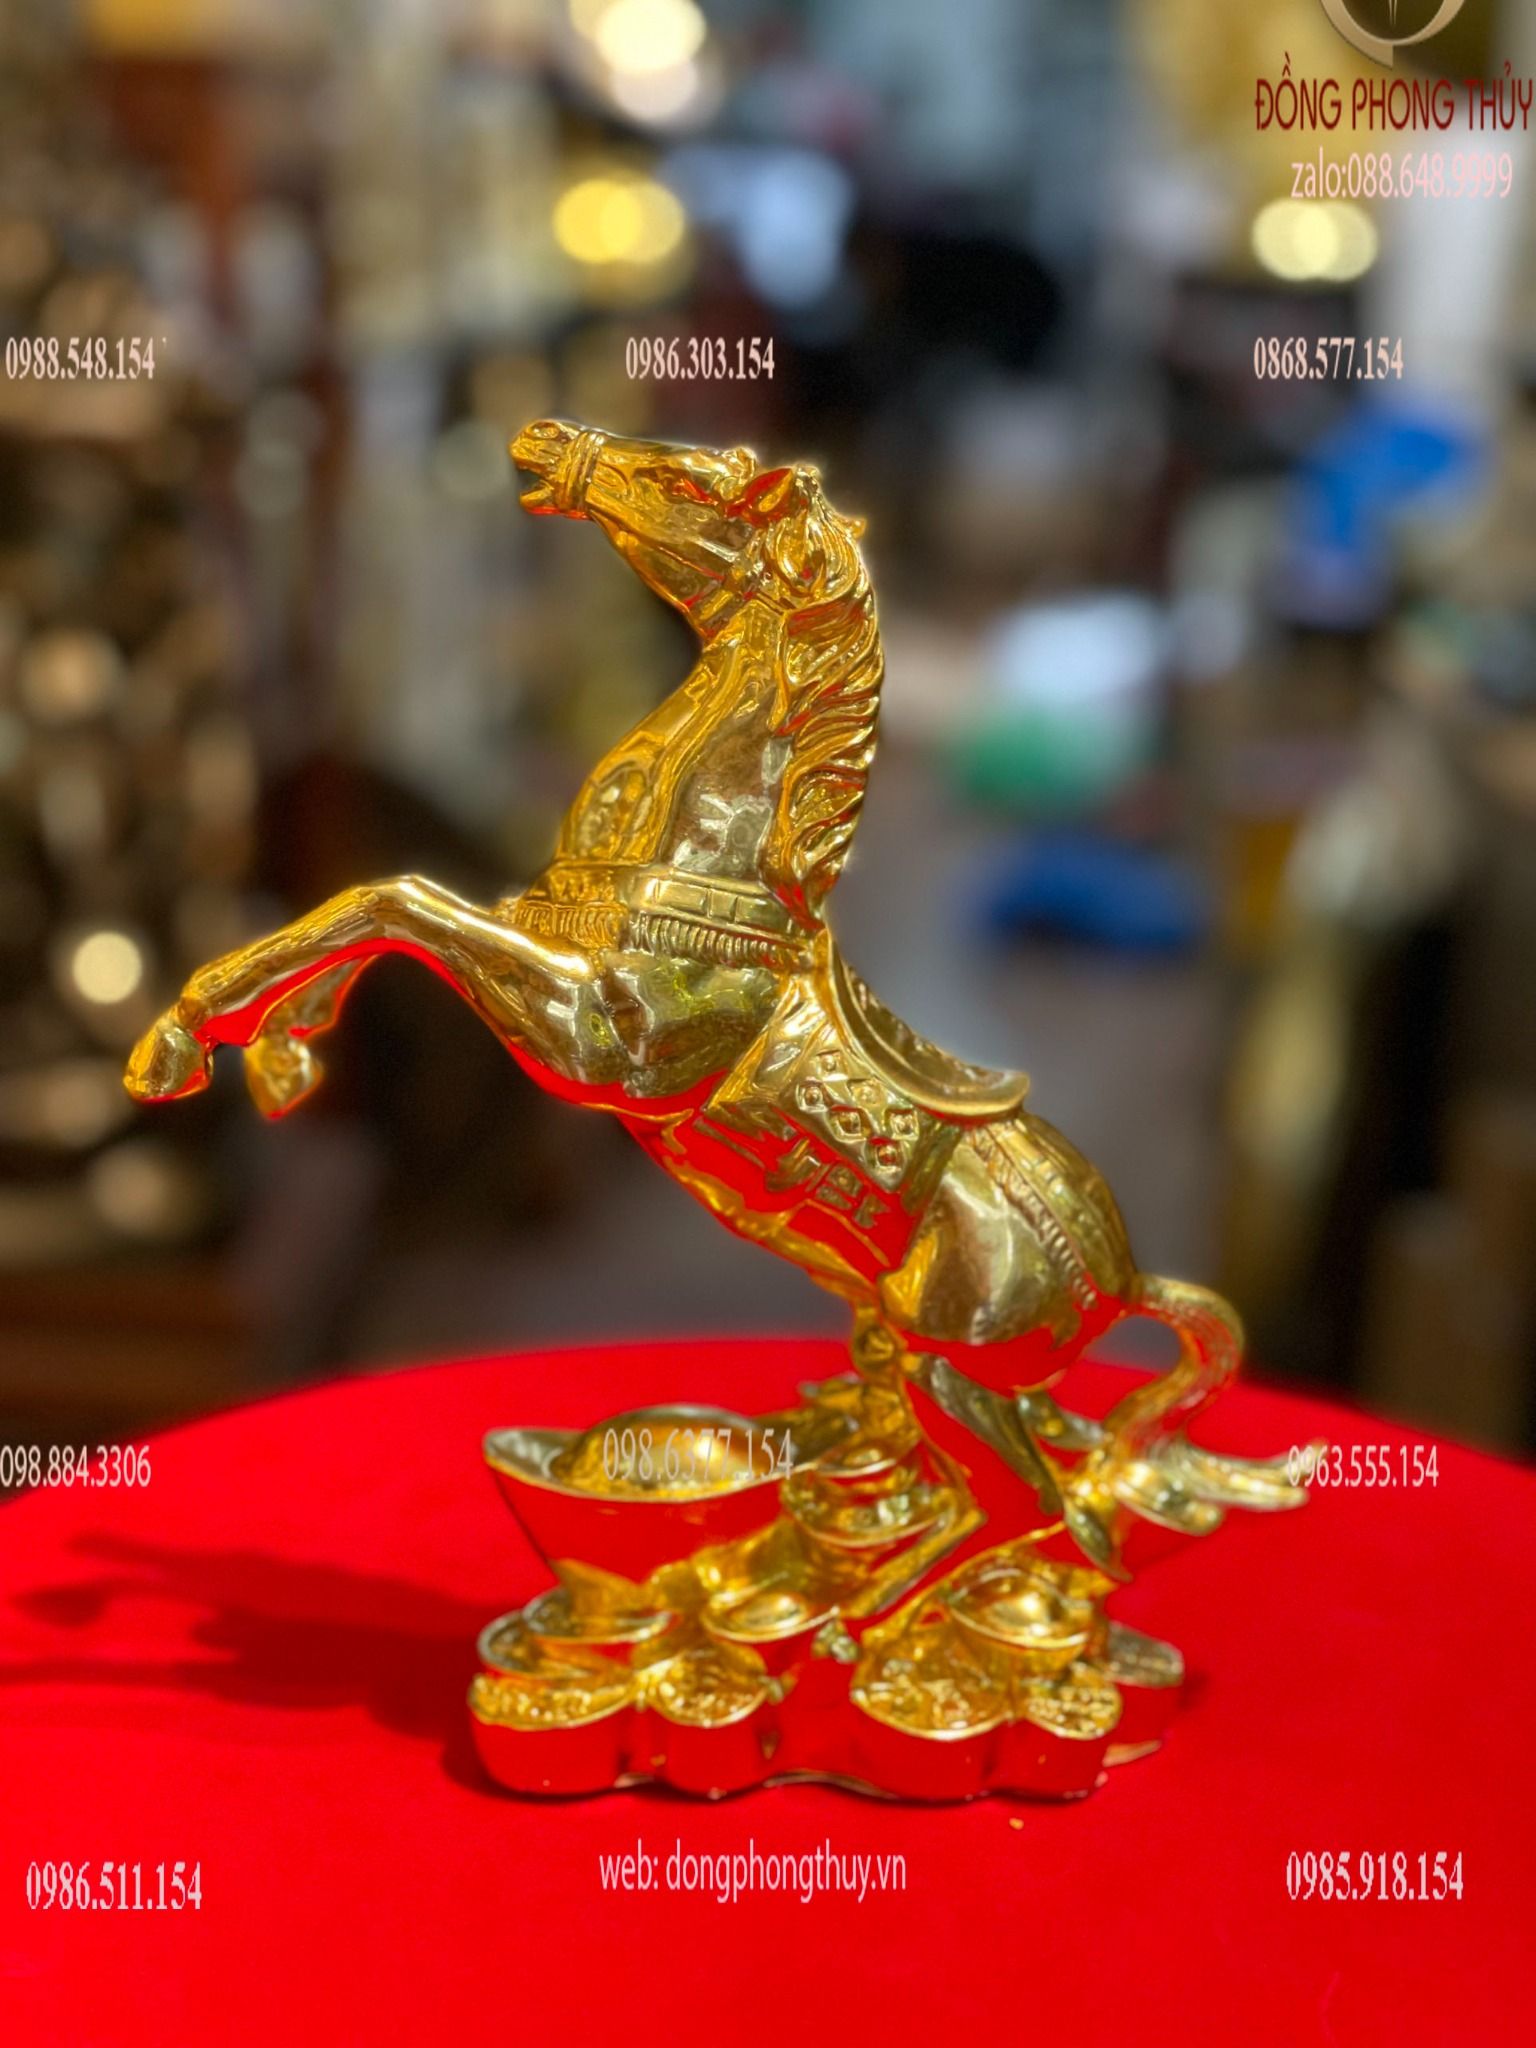 Tượng ngựa phong thủy dát vàng 24k decor